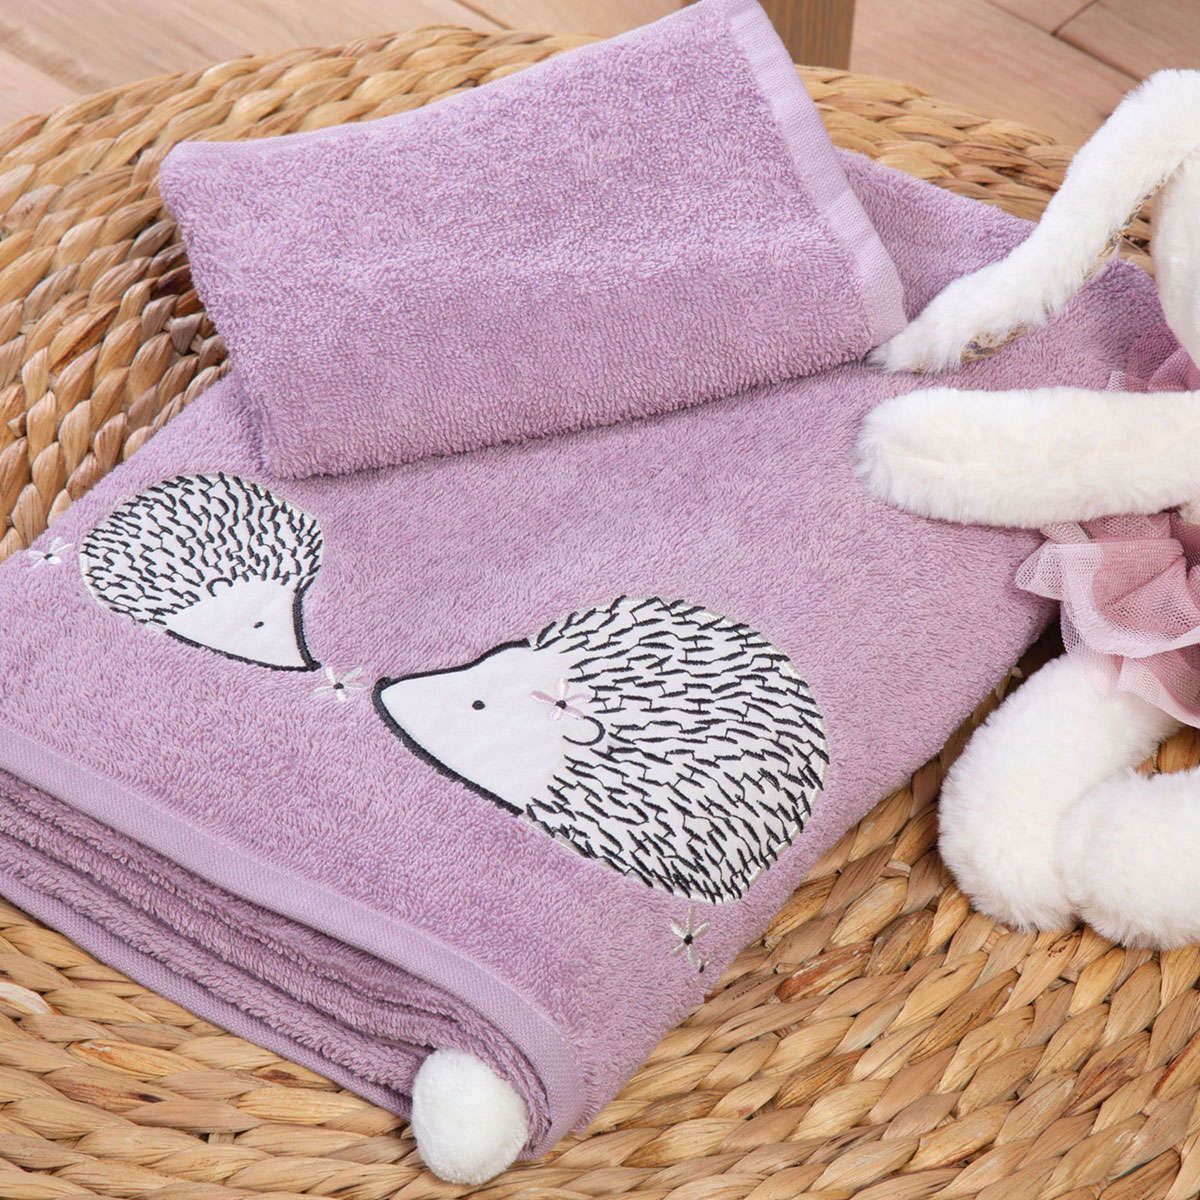 Παιδικές πετσέτες σετ Forest Friends purple nef nef